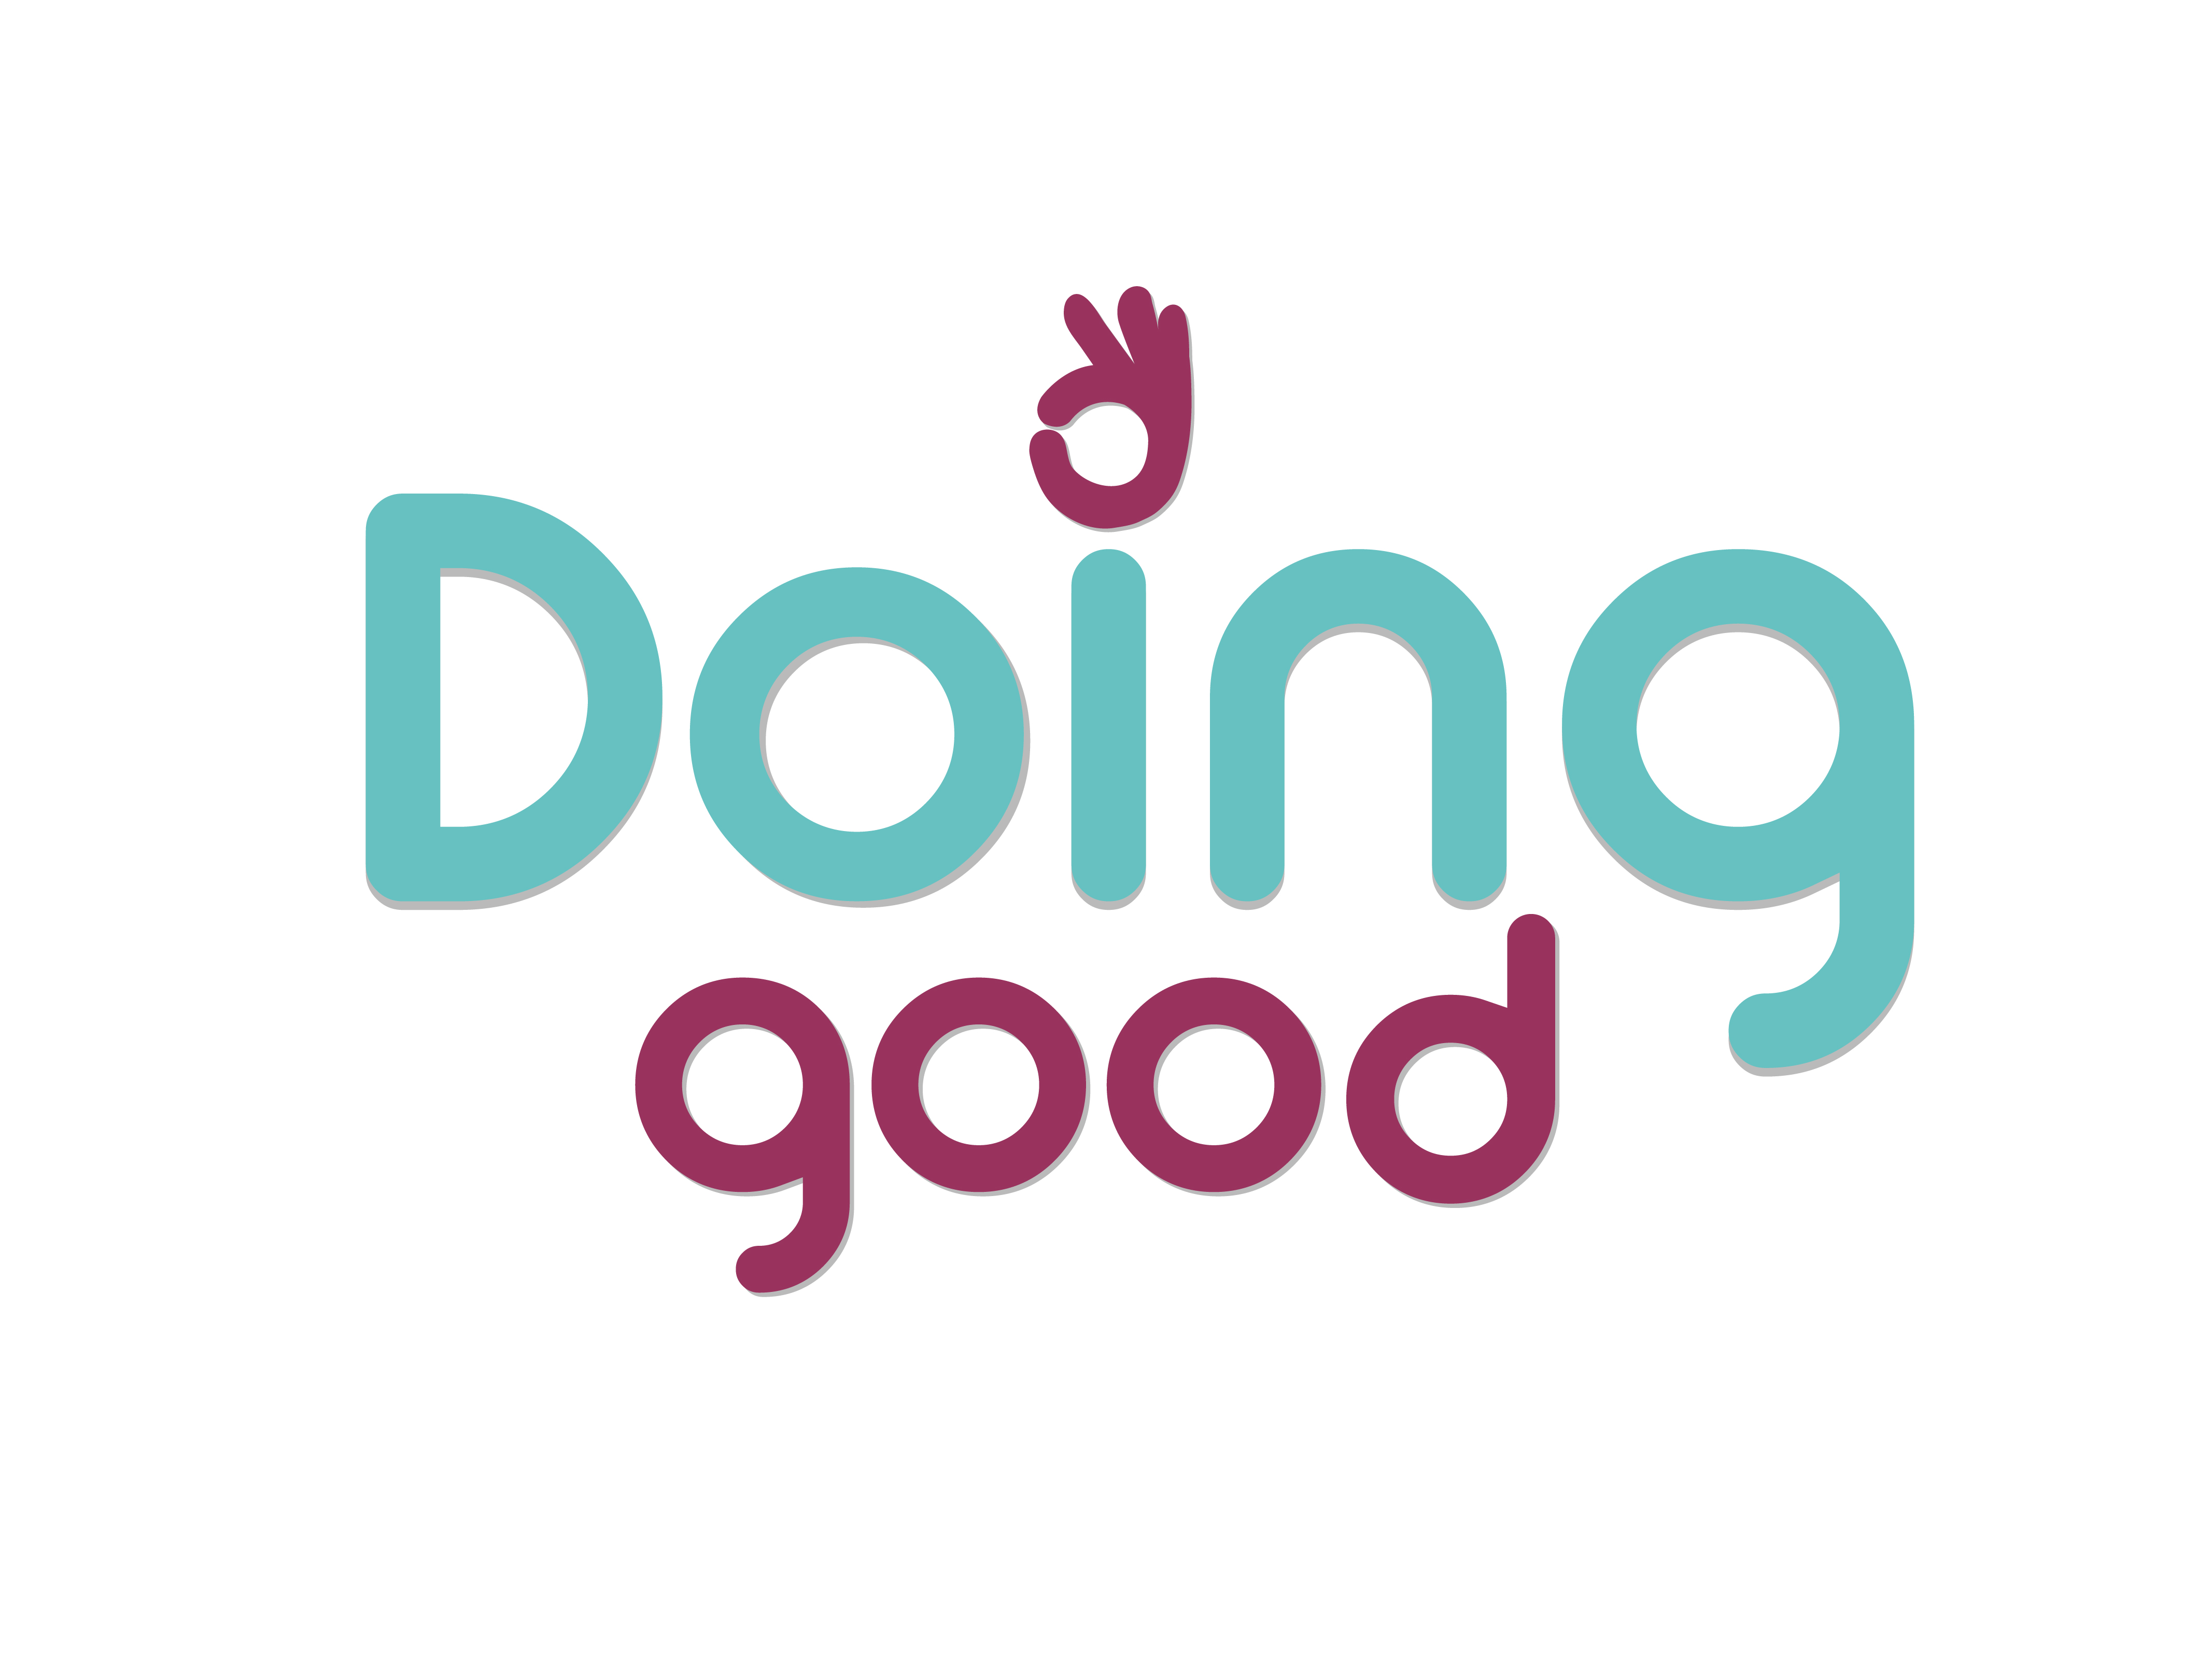 I m doing good. Doing. Doinb. Do good. Doing good by doing good.